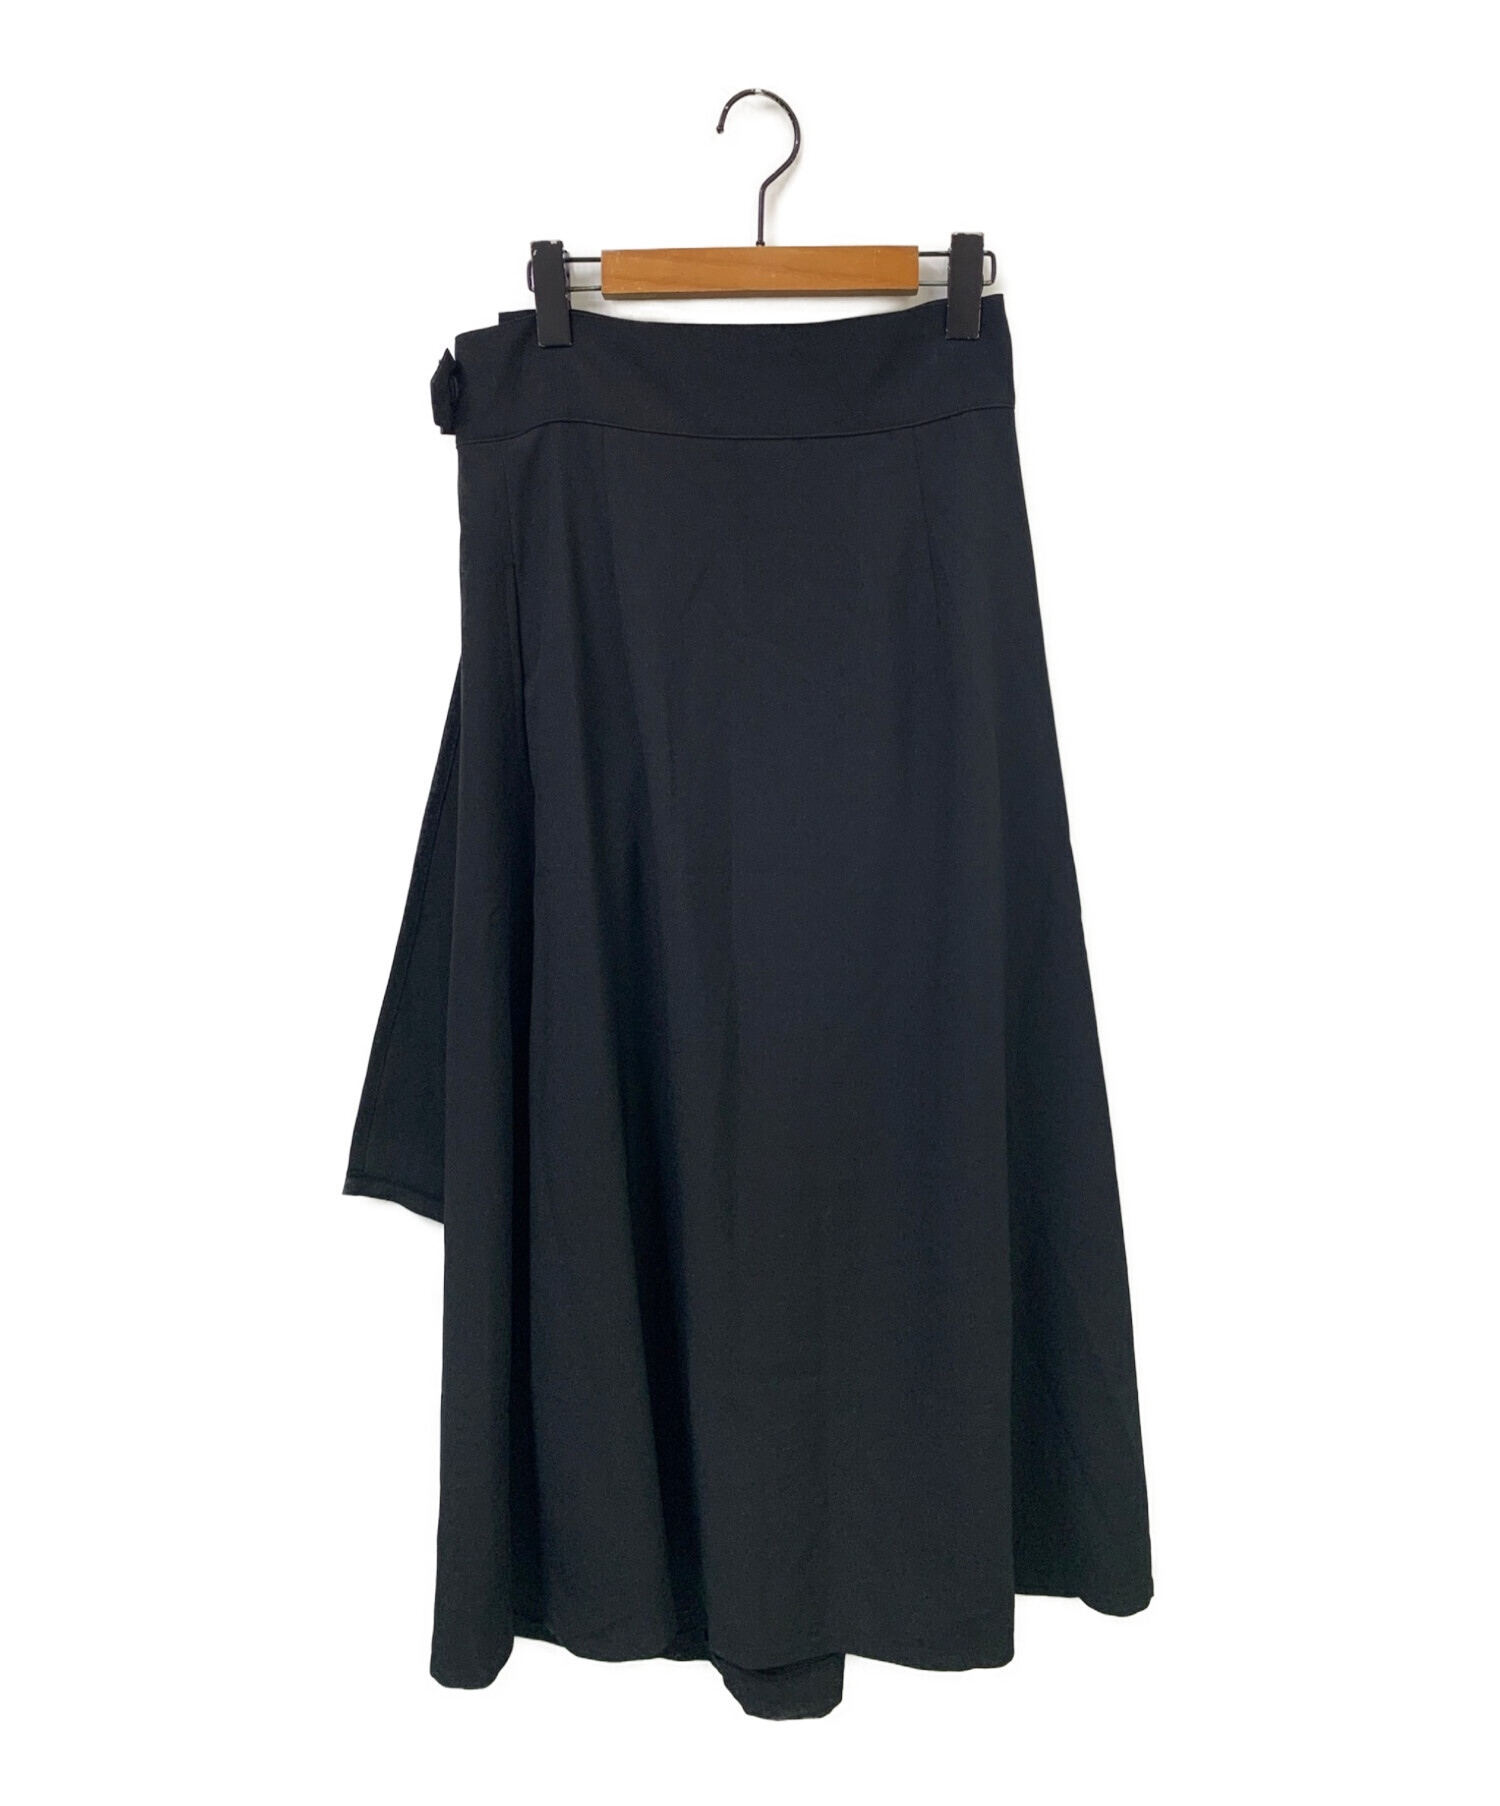 foufou (フーフー) tender tuck skirt ブラック サイズ:1